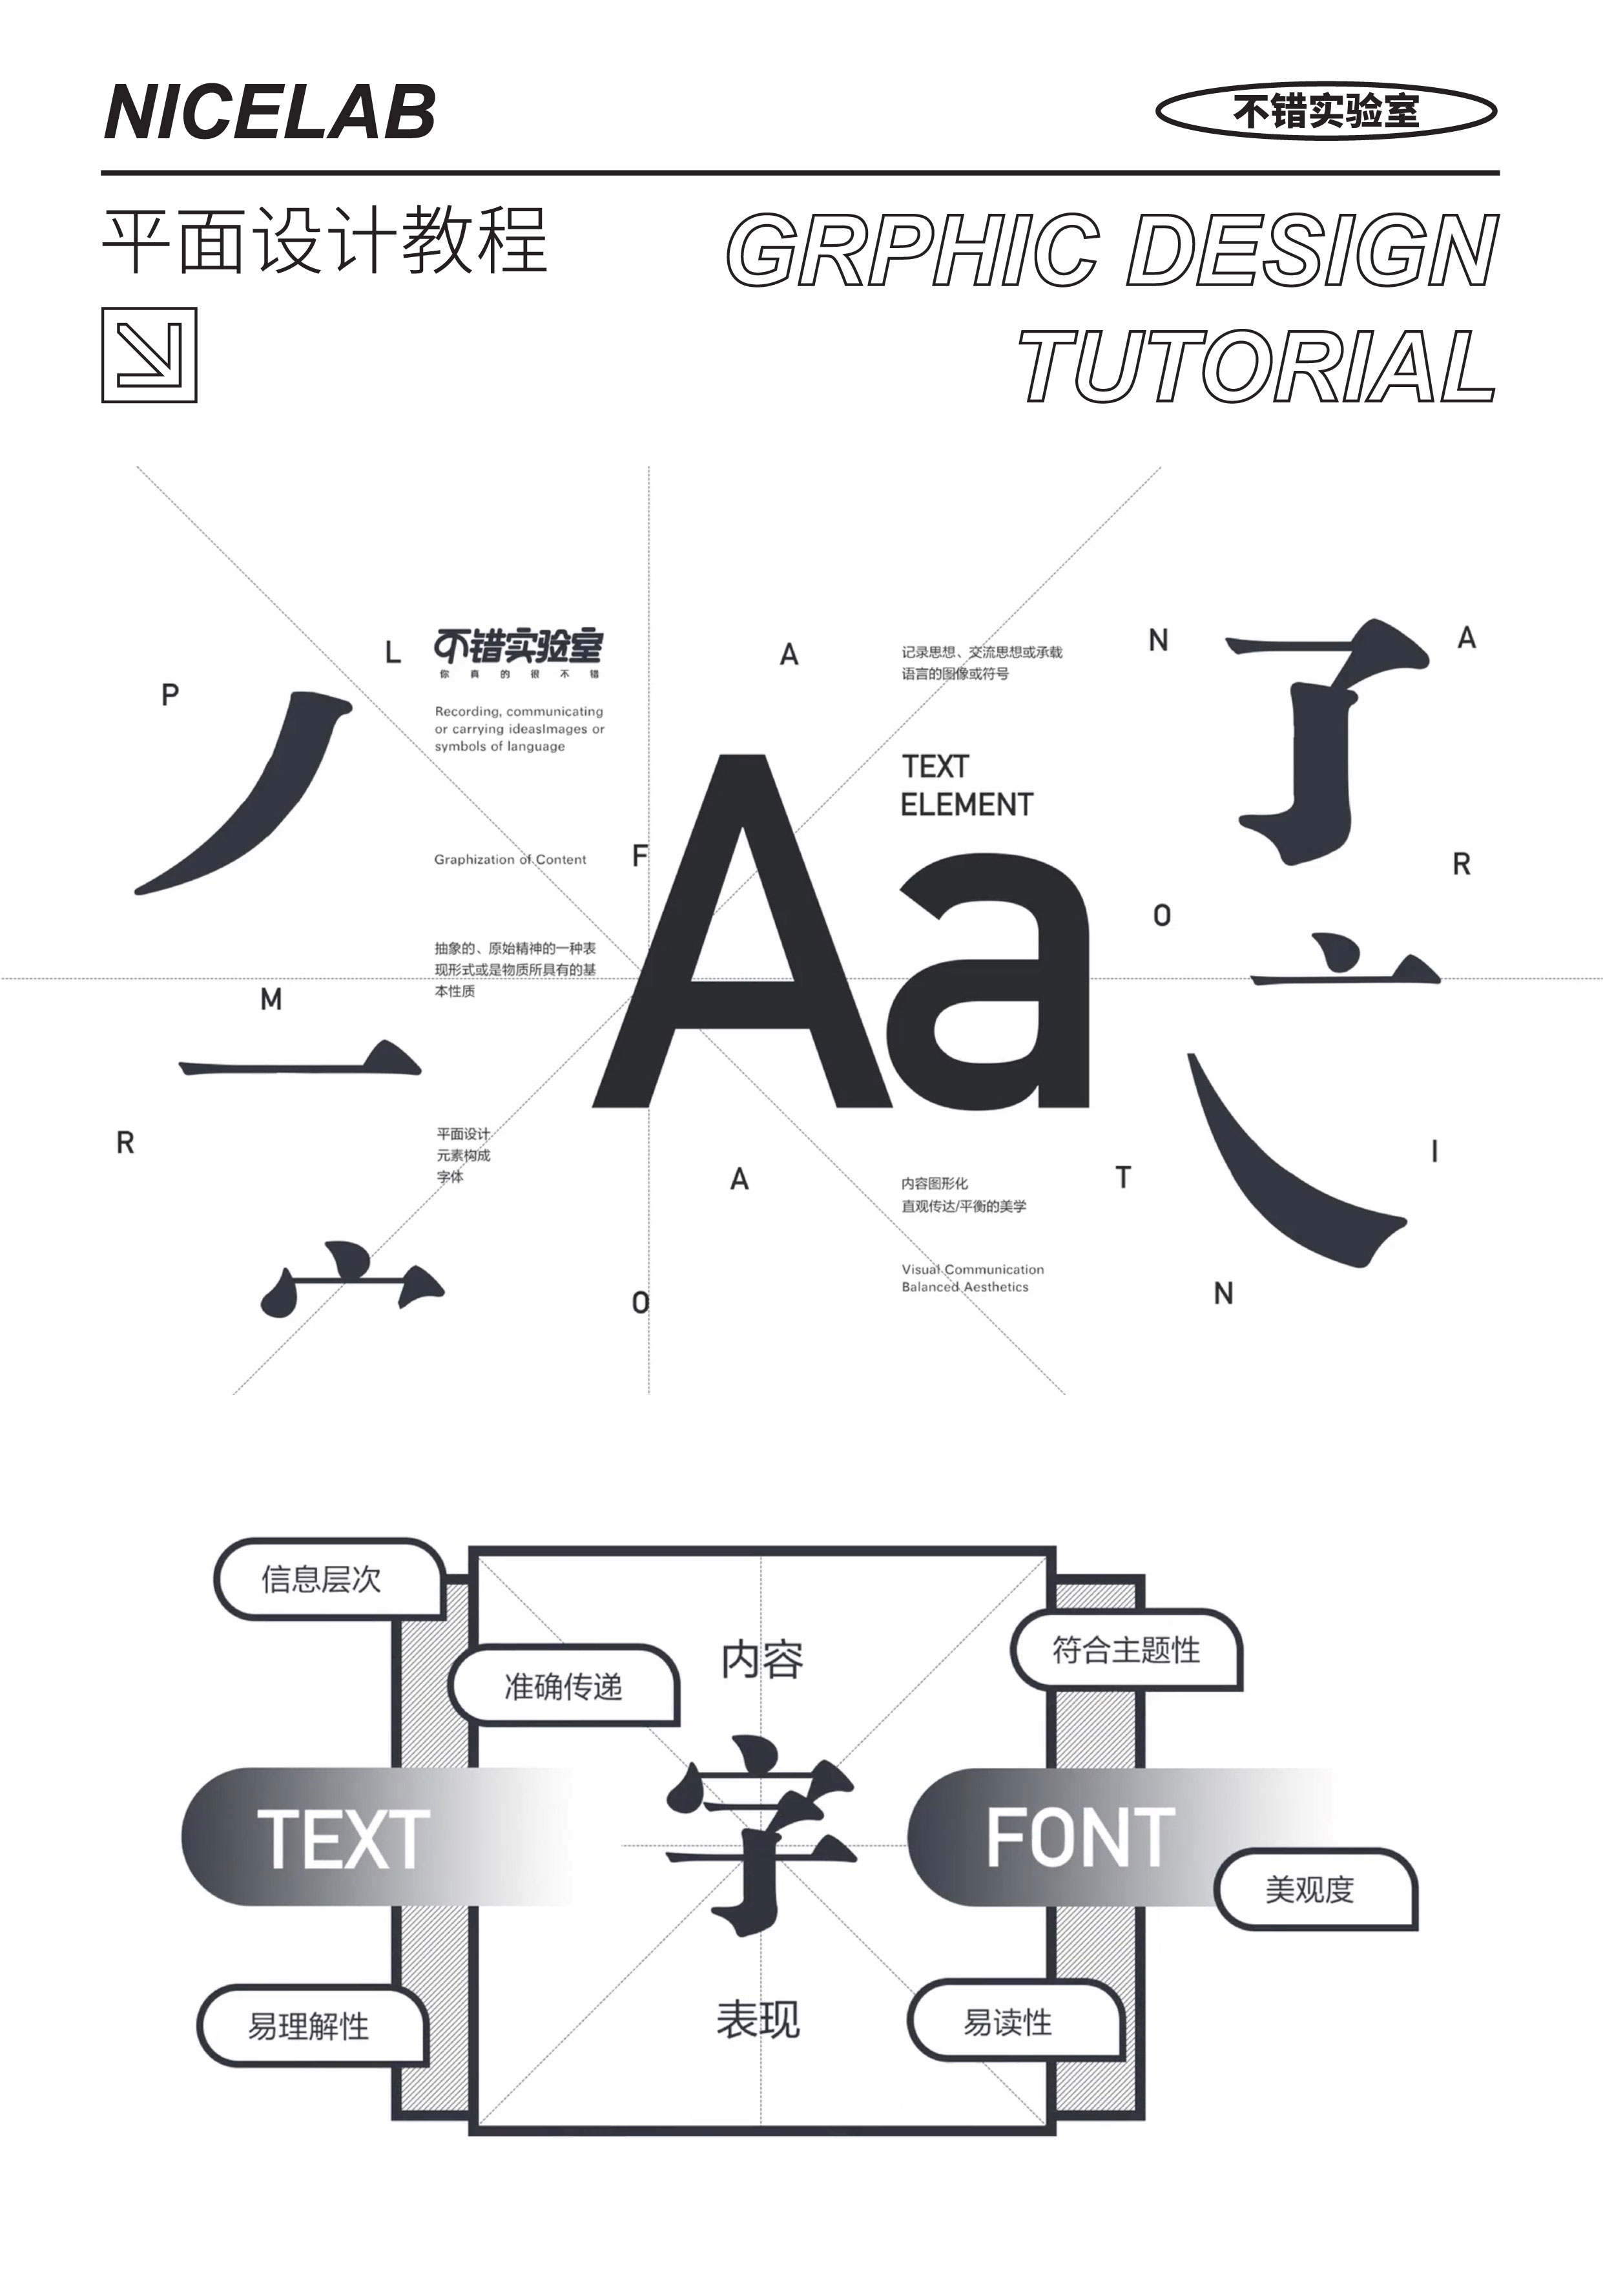 【平面设计教程】第四集 - 字体元素的使用